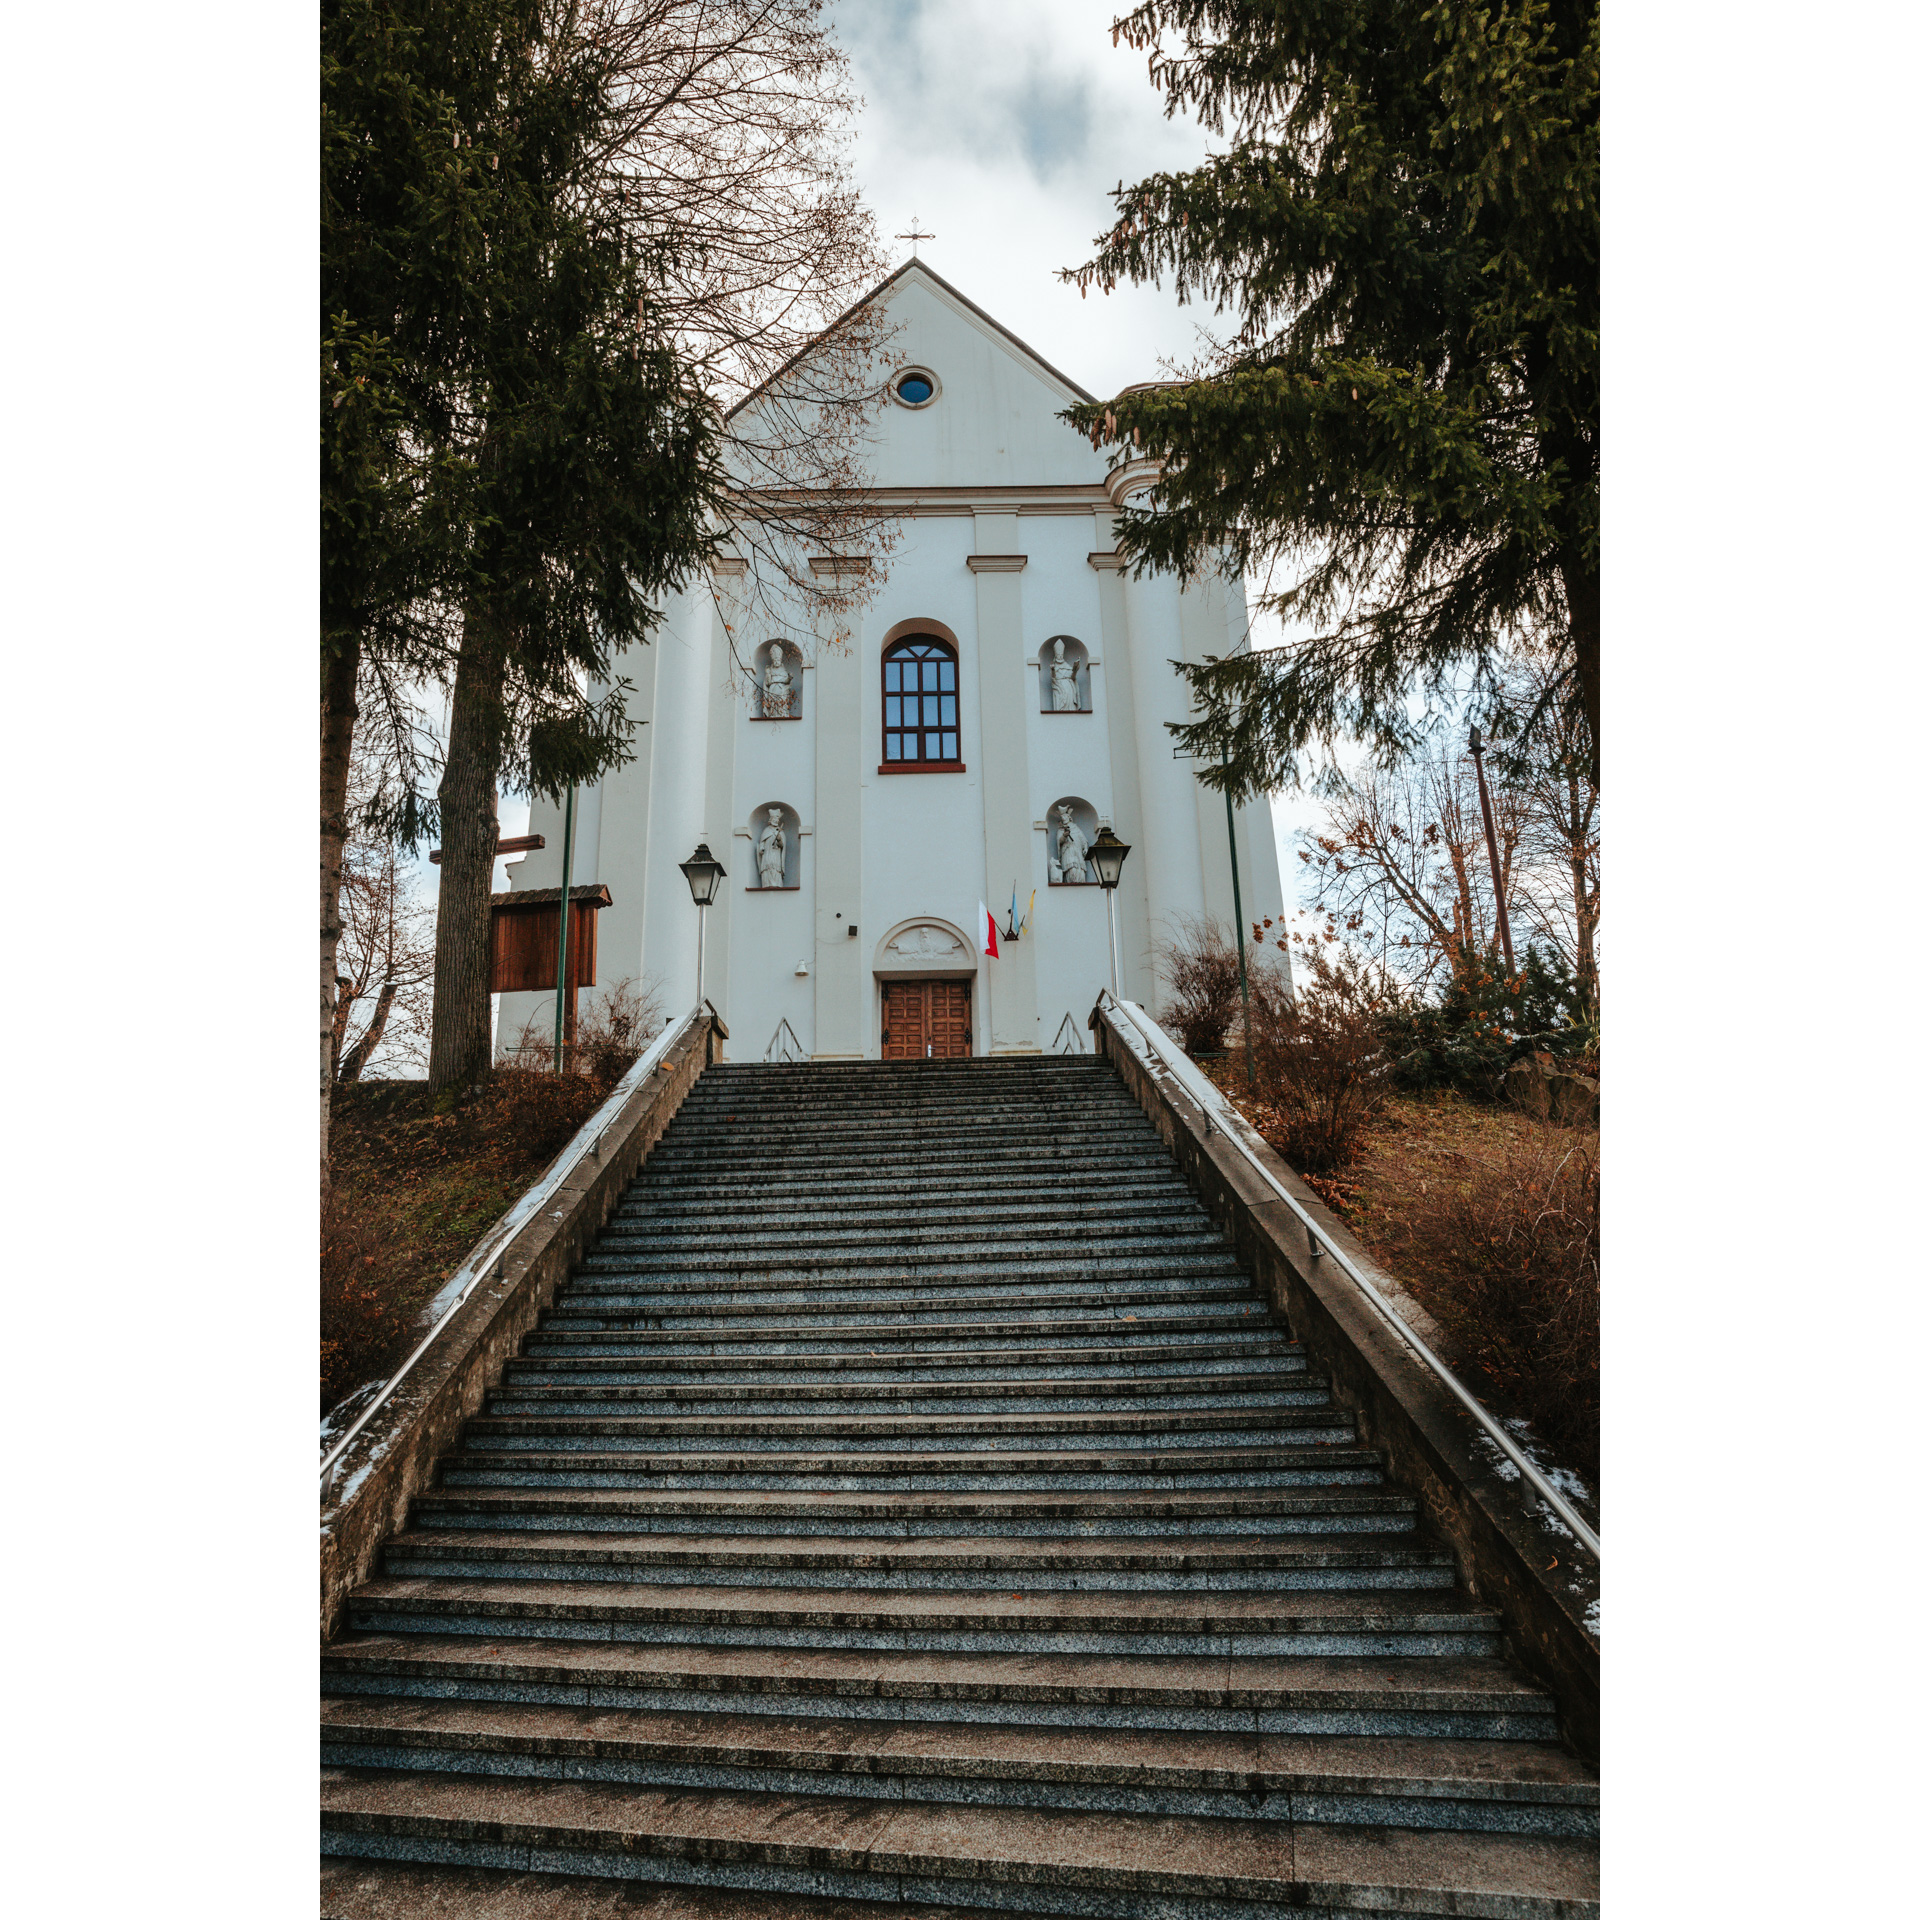 Biały, murowany kościół na szczycie schodów z czterema wnękami z figurami świętych w fasadzie, półokrągłym oknem, drzwiami i krzyżem na szczycie